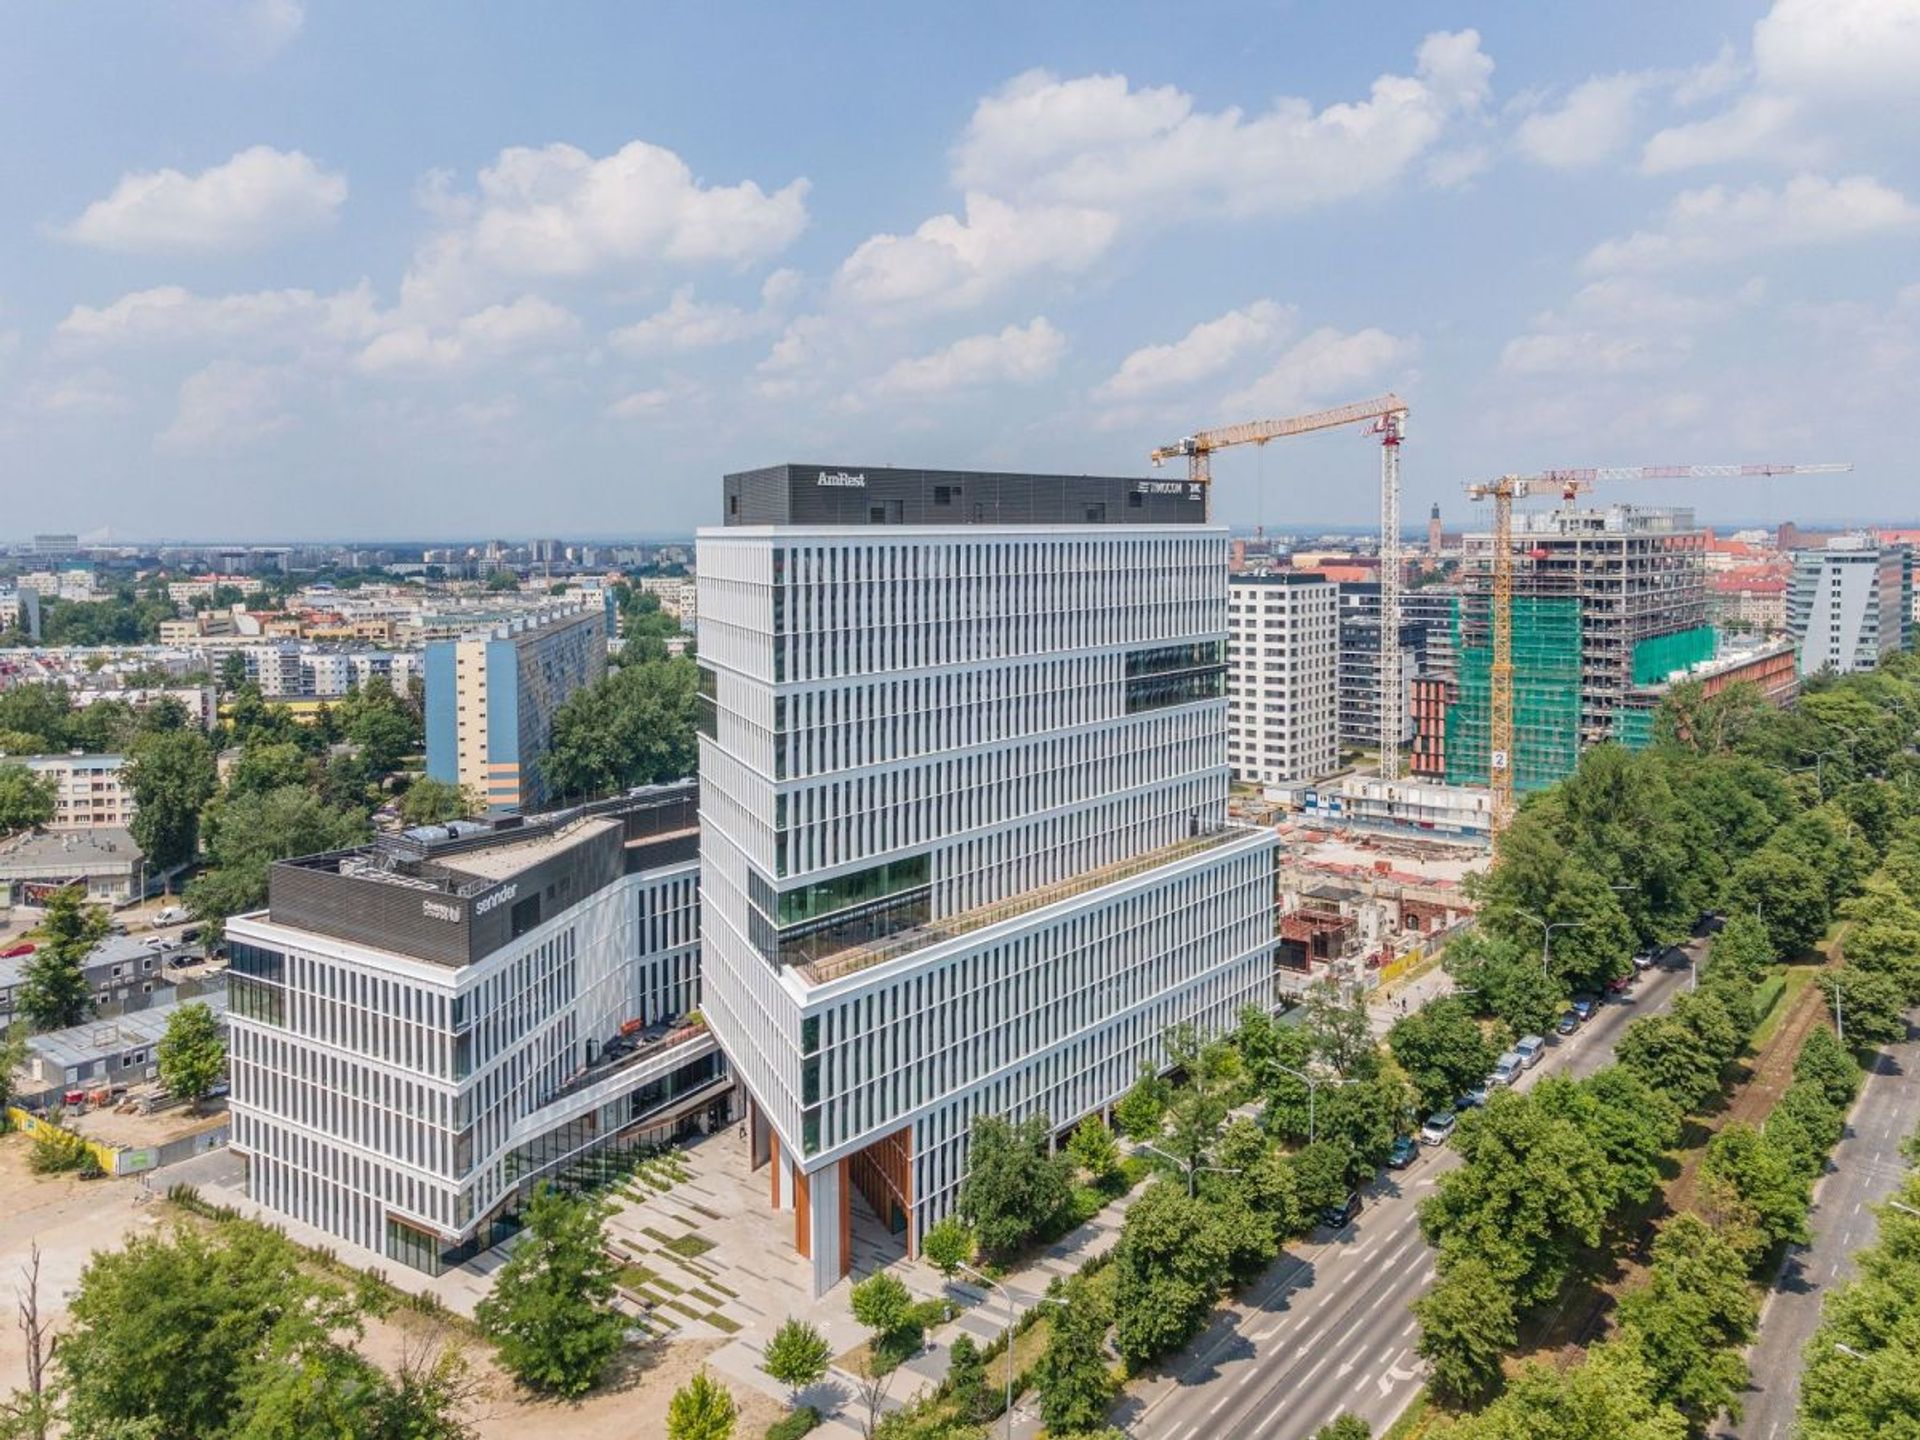 Znana niemiecka firma farmaceutyczna inwestuje we Wrocławiu. Na siedzibę wybrała Centrum Południe